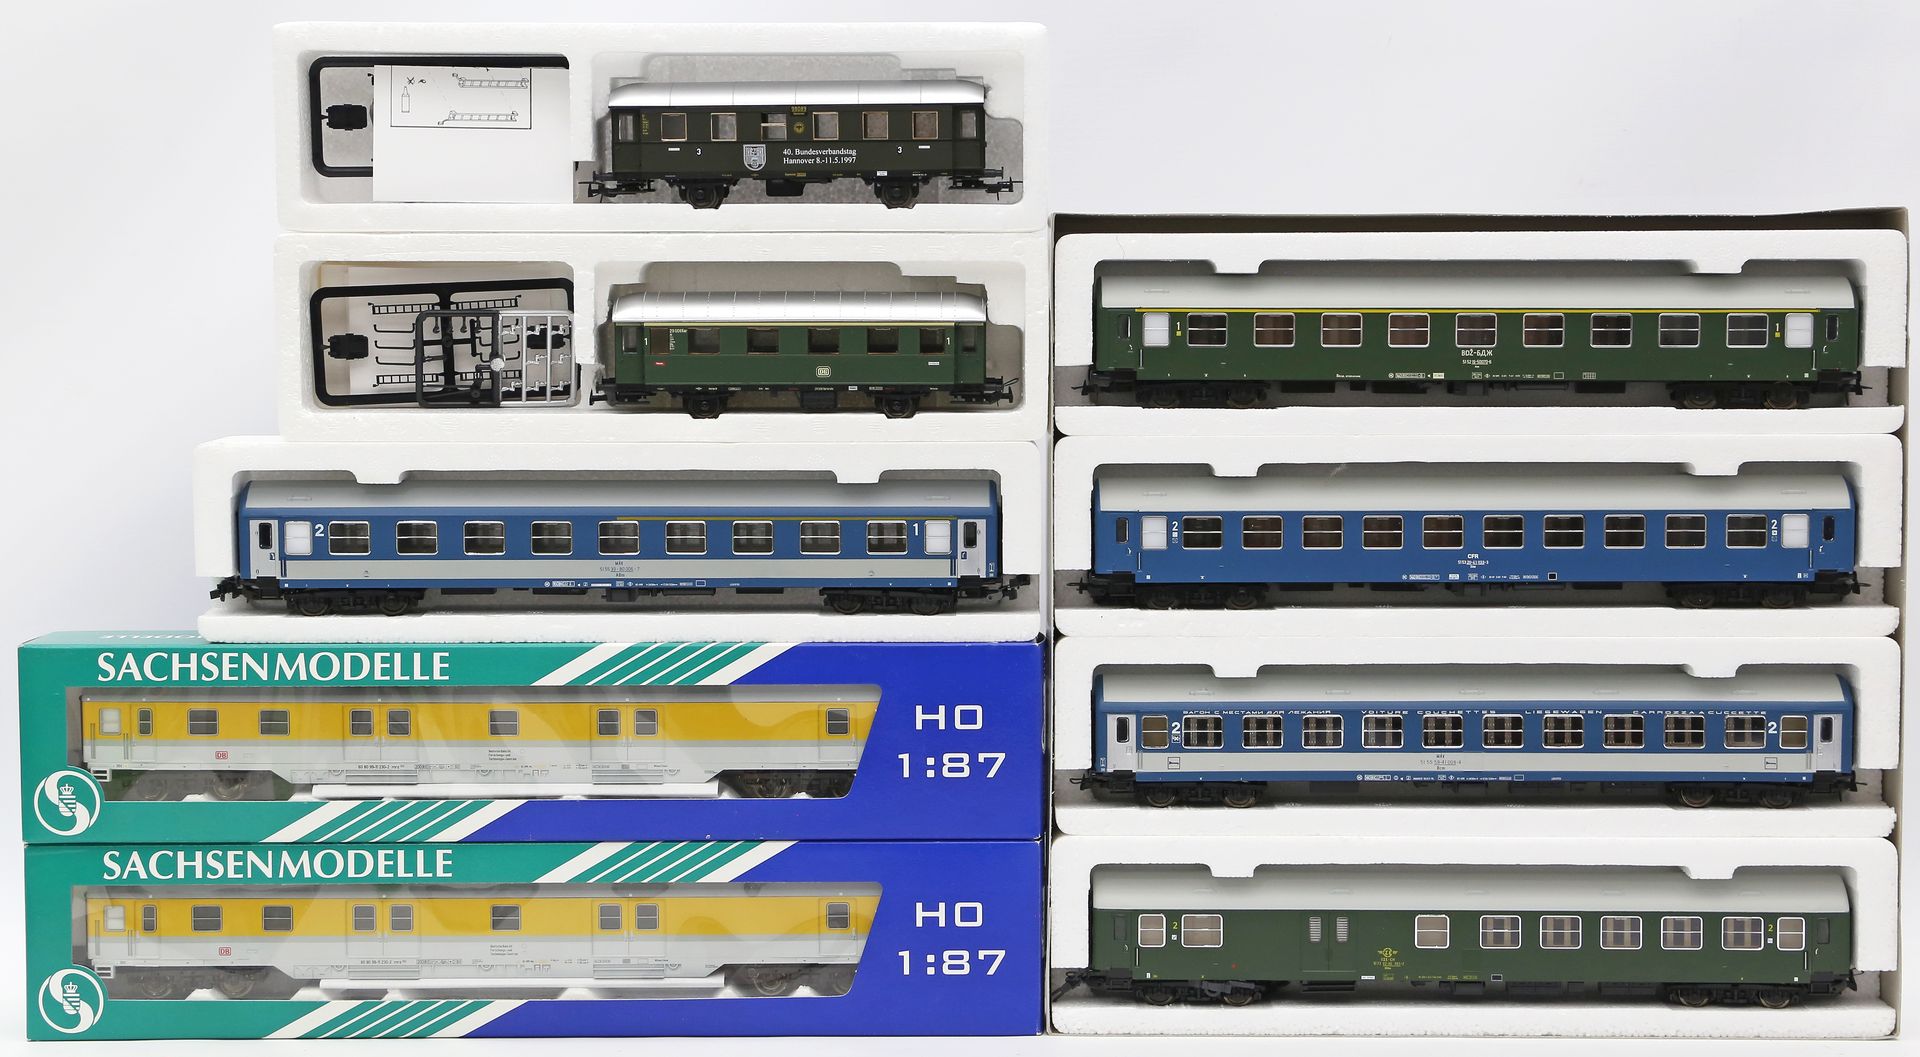 7 D-Zug- bzw. Personen- und 2 Messbeiwagen, Sachsenmodelle H0.